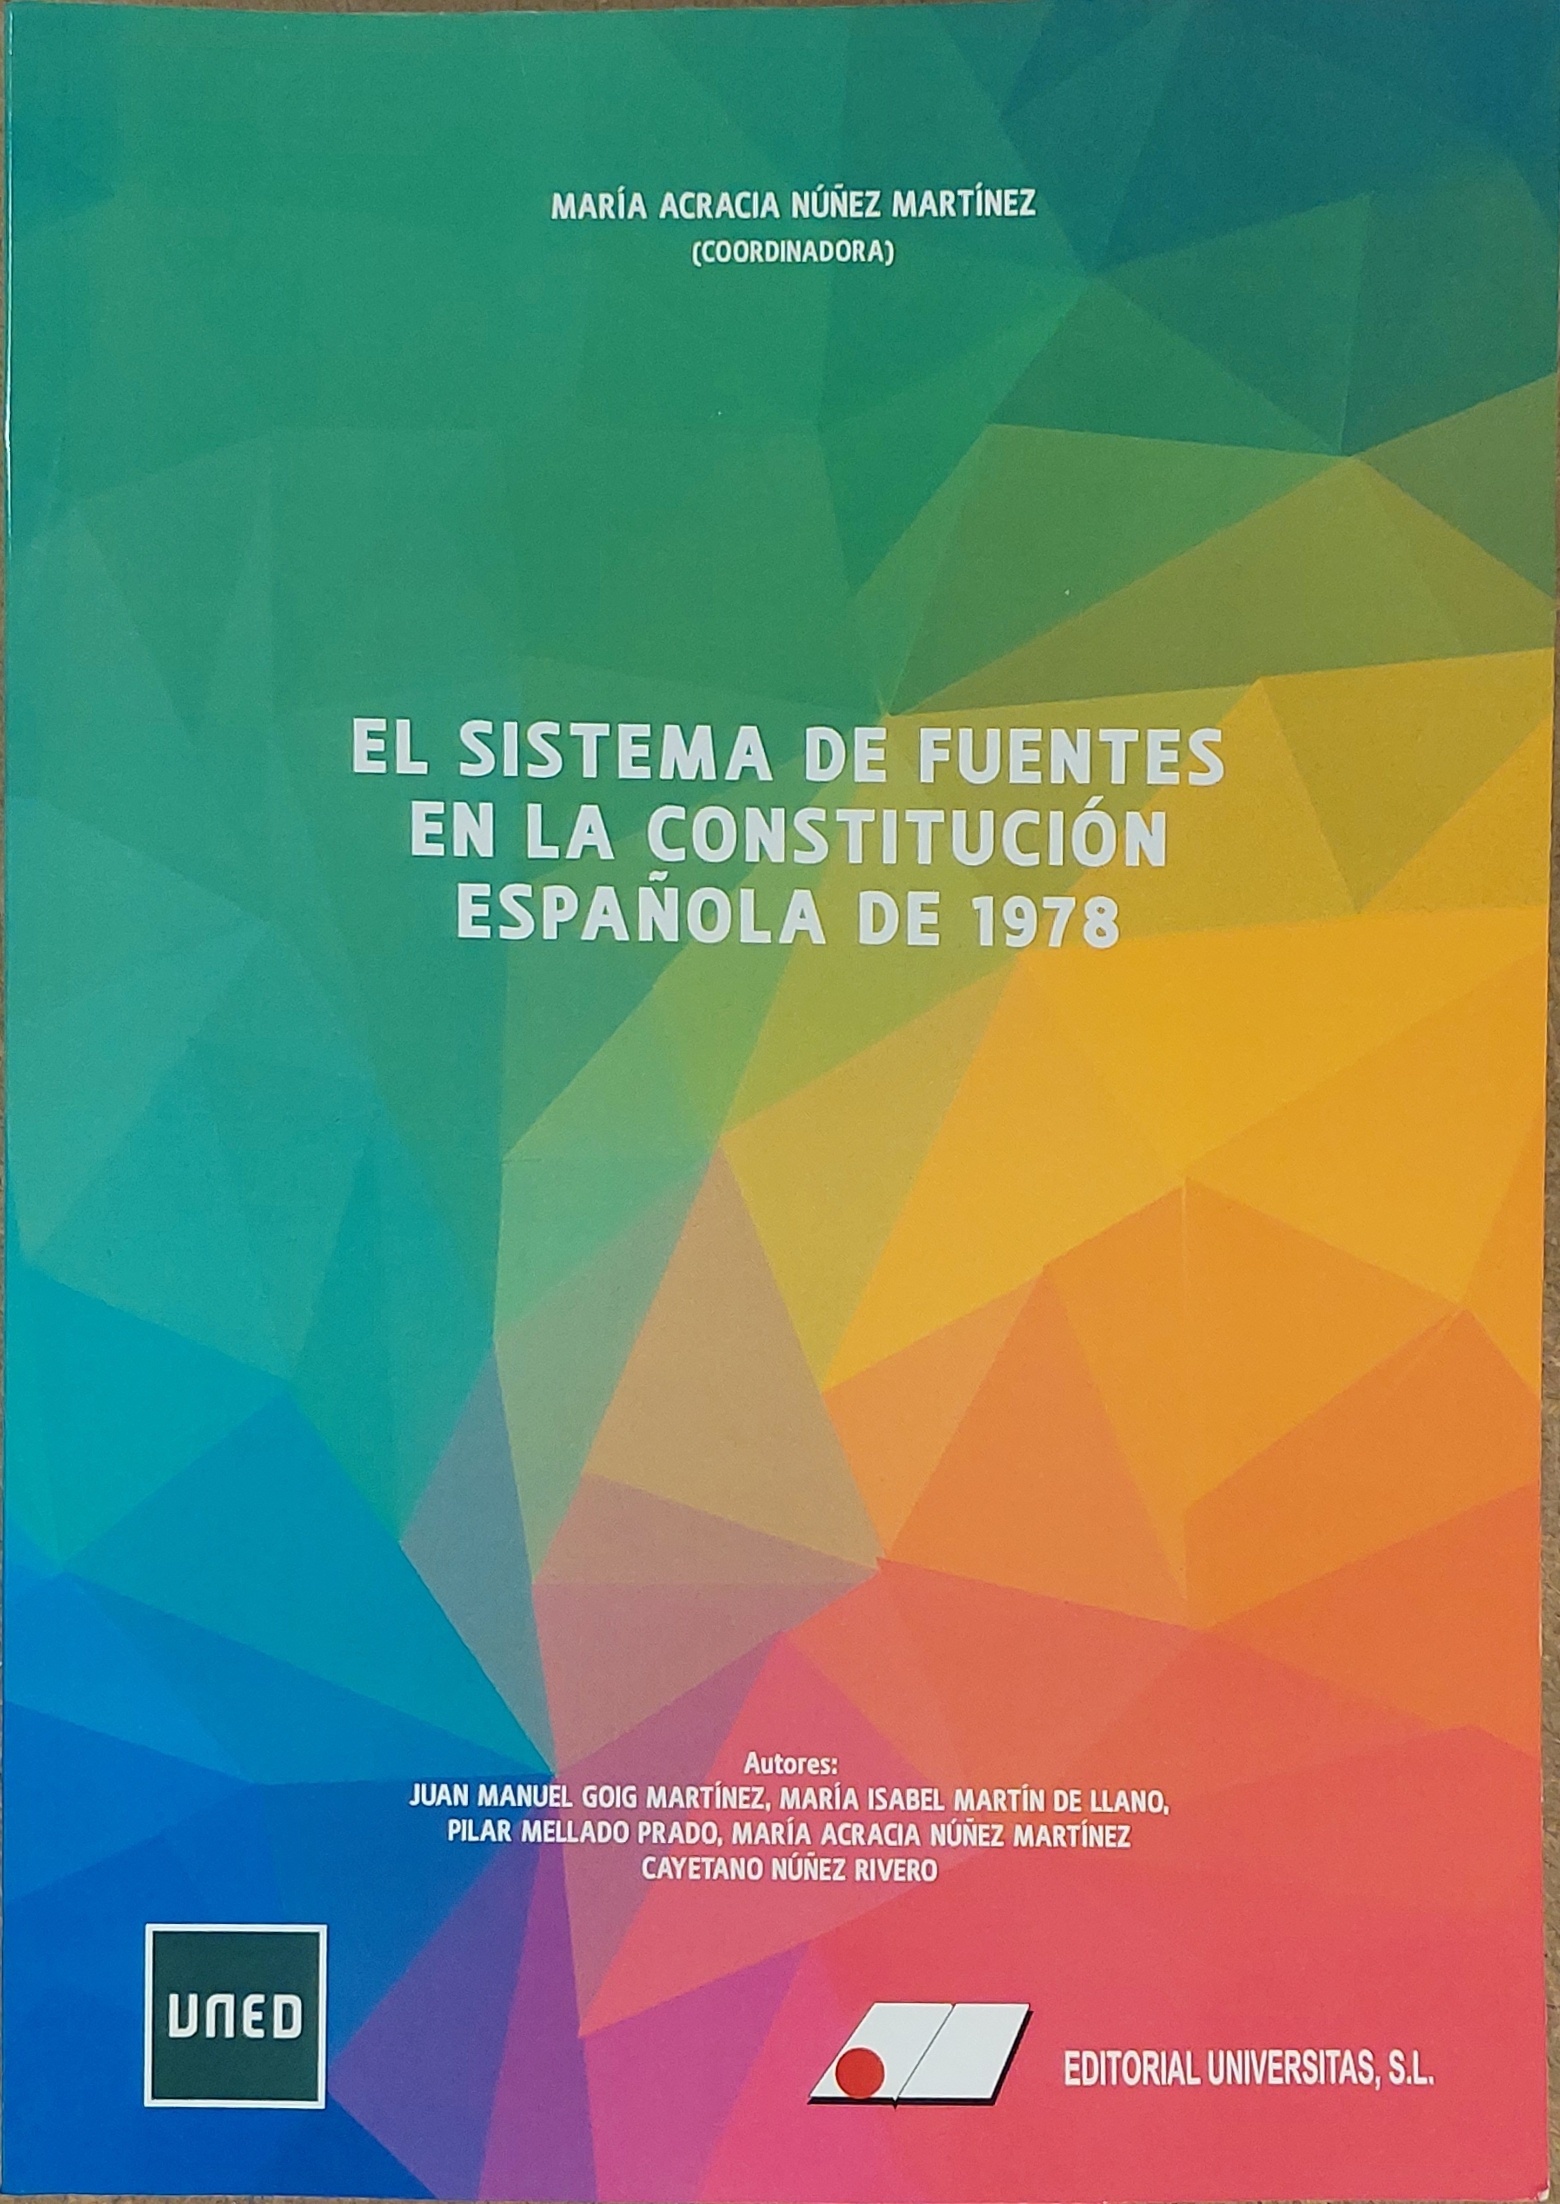 El sistema de fuentes en la Constitución Española de 1978